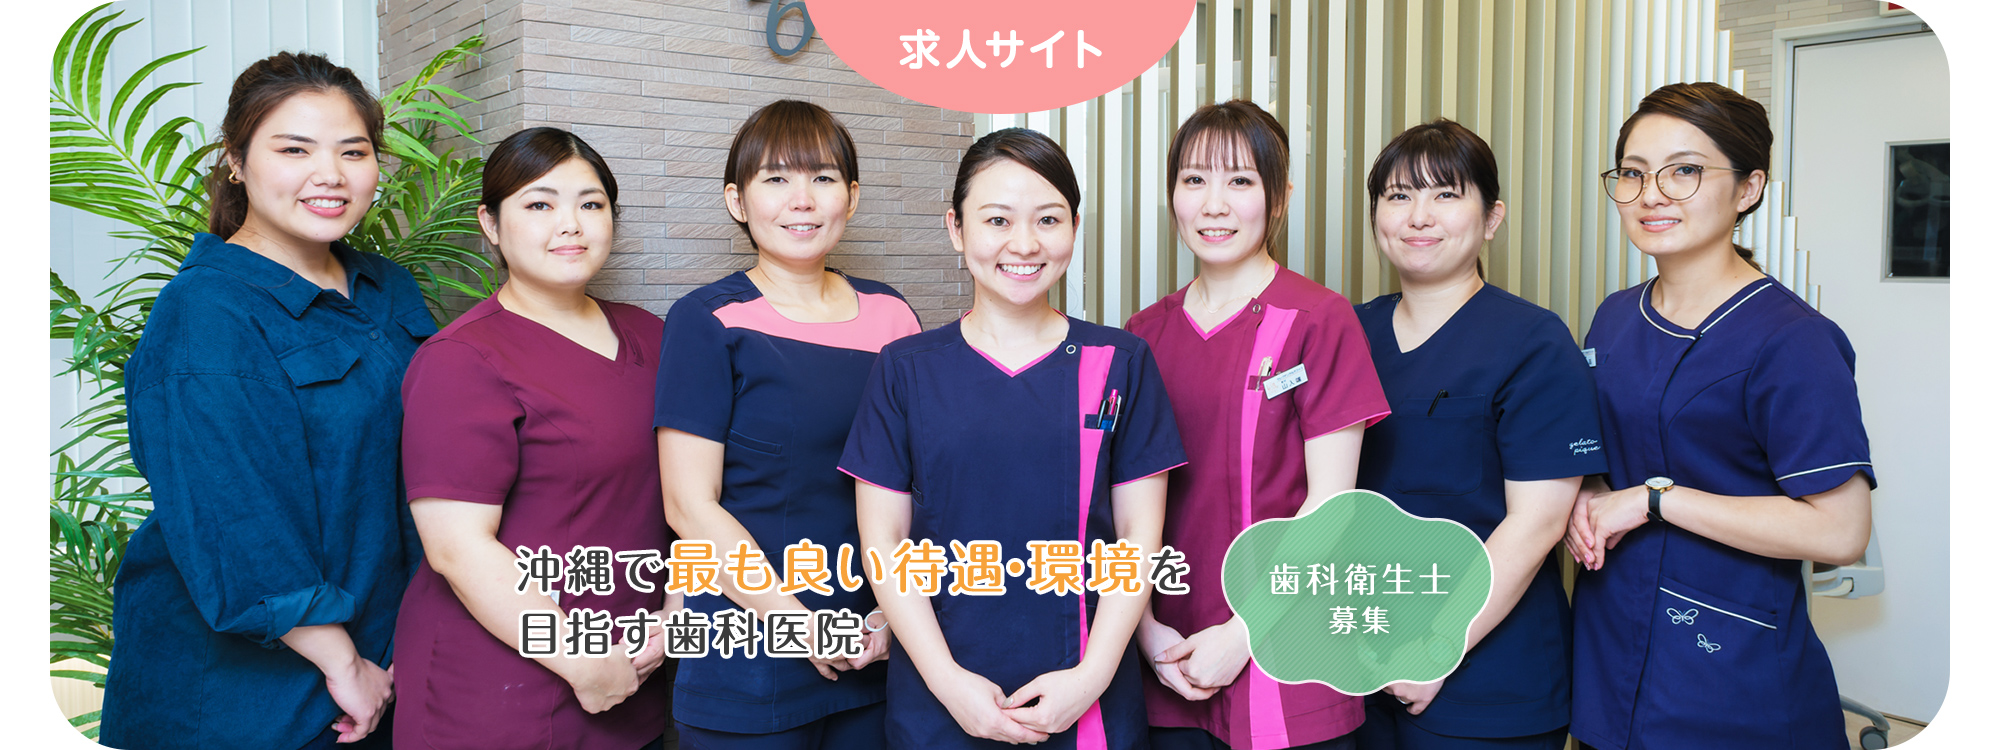 沖縄で最も良い待遇・環境を 目指す歯科医院 歯科衛生士 募集